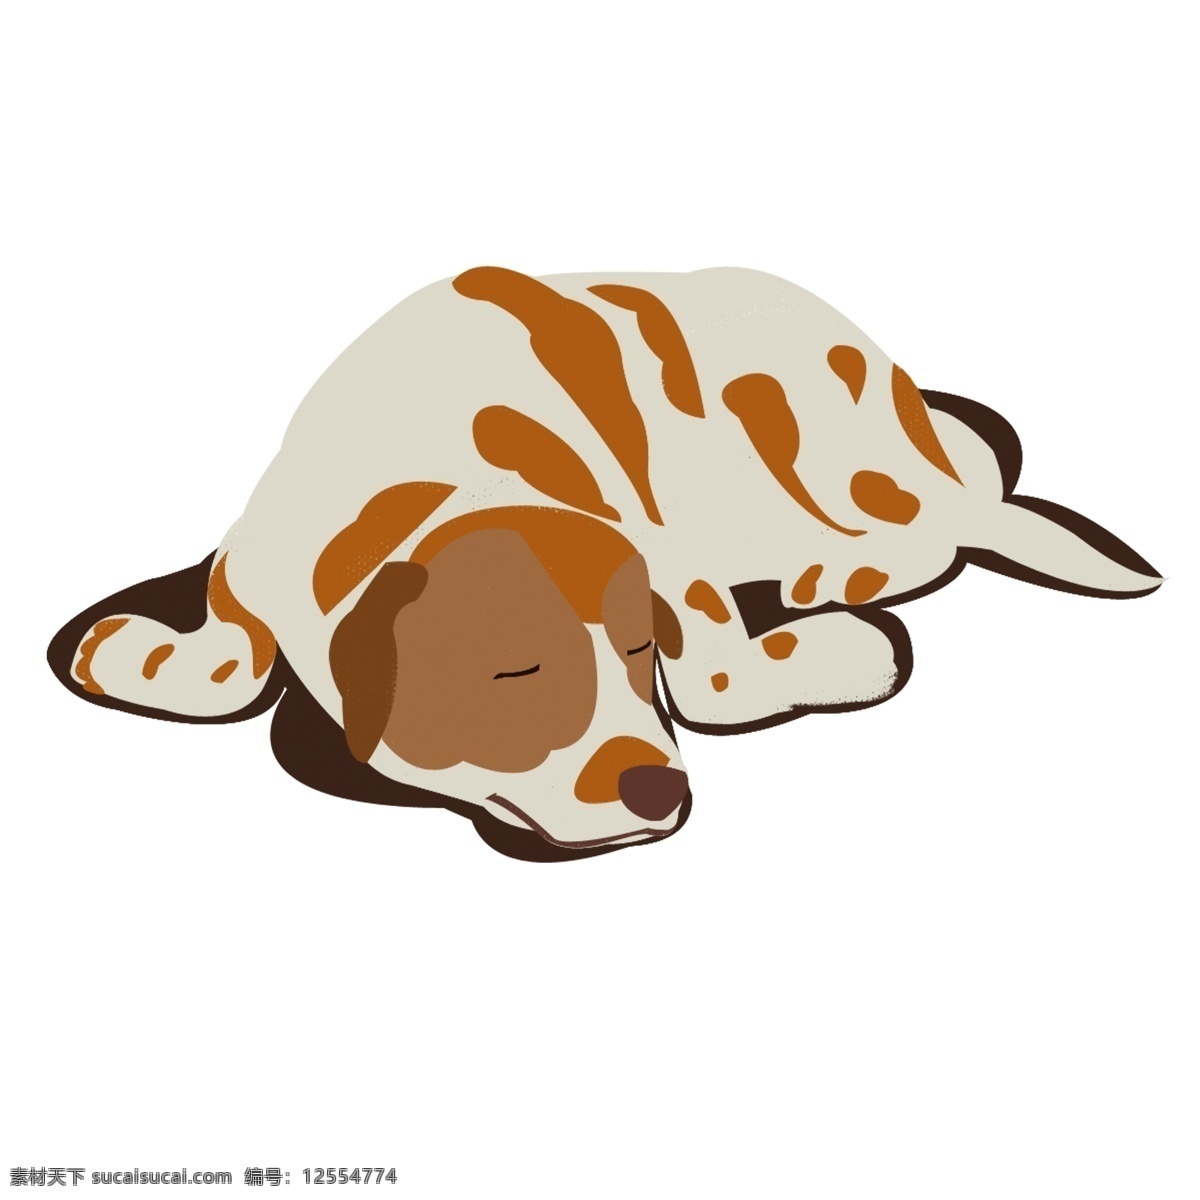 匍匐 睡觉 水彩 咖啡色 斑点狗 原创 元素 小狗 手绘小动物 做梦 原创元素 水彩画风格 咖啡色斑点